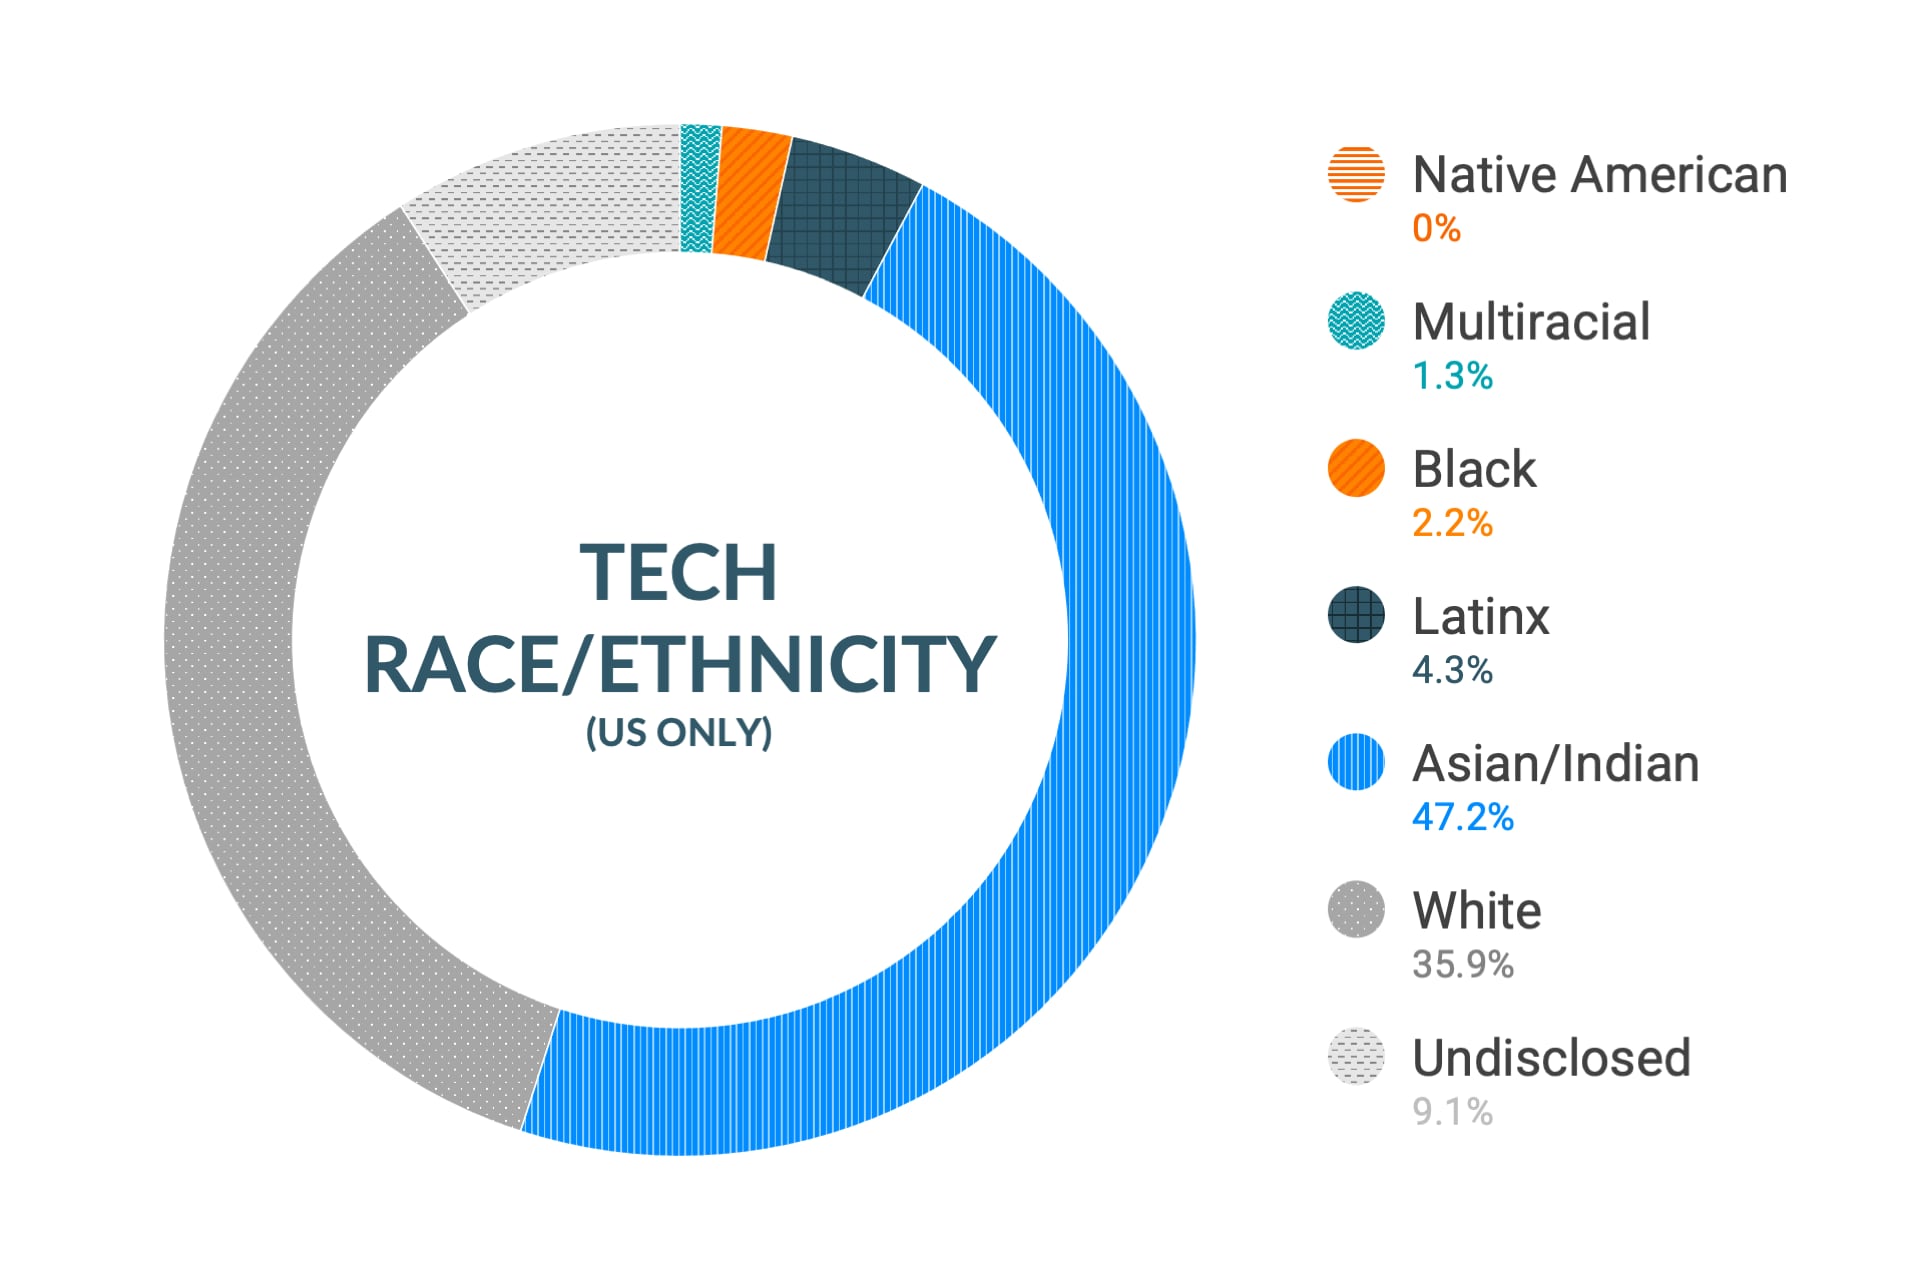 미국 지역 기술 및 엔지니어링 역할 내 인종 및 민족에 대한 Cloudera의 다양성 및 포용력 데이터: 아메리카 원주민 0%, 다인종 1.8%, 흑인 2.0%, 라틴계 3.6%, 아시아인 및 인도인 46.3%, 백인 36.2%, 비공개 10.1%